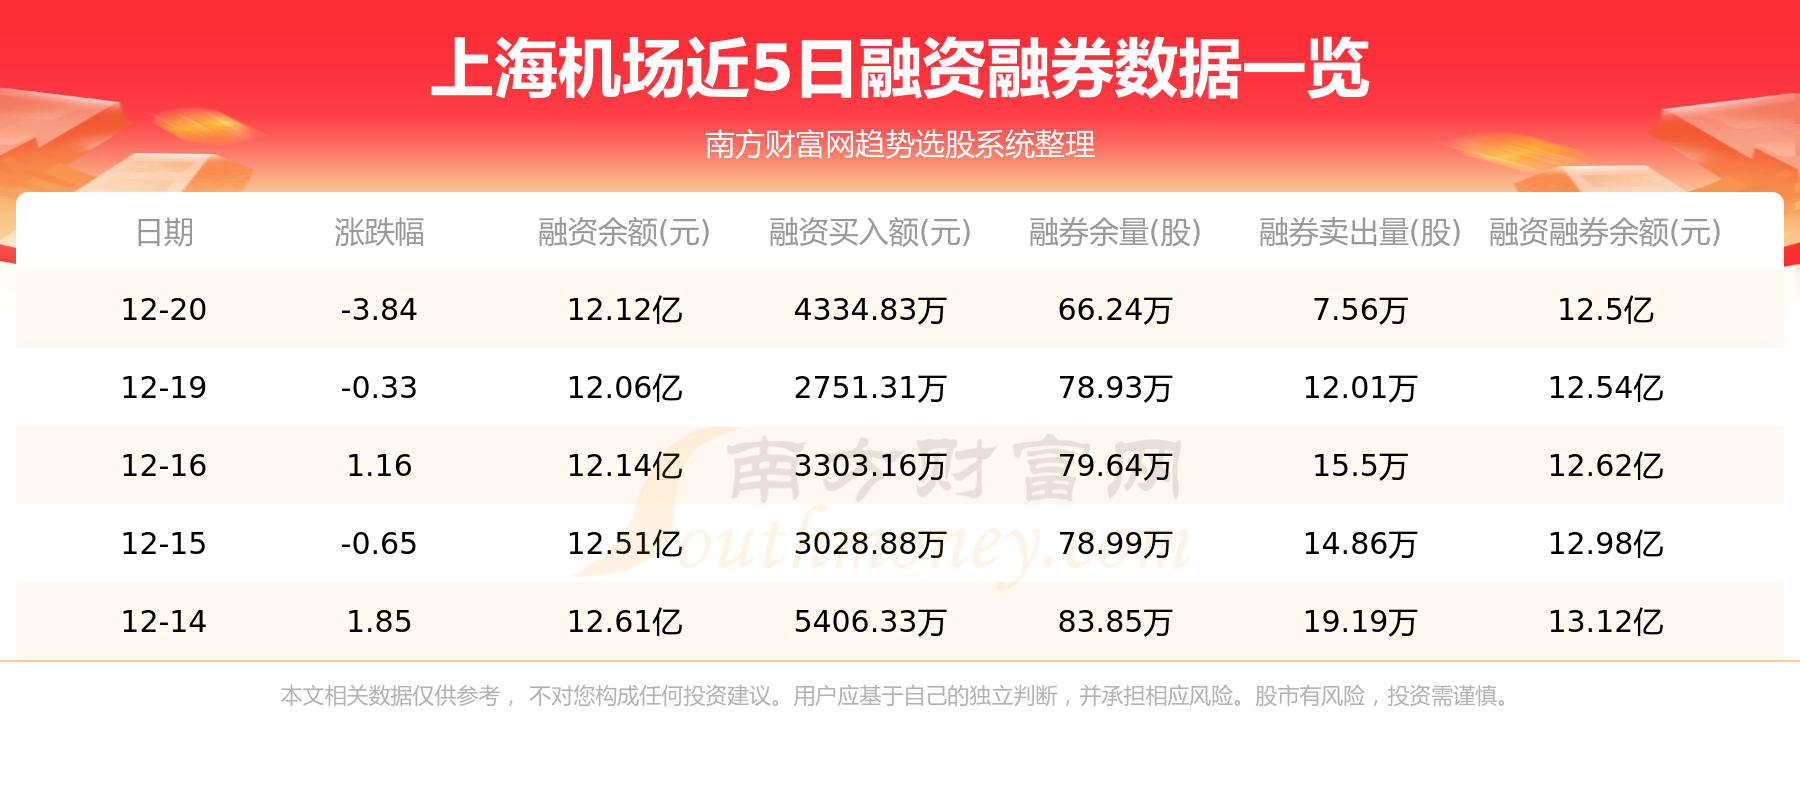 上海机场12月22日行情及资金流向一览表